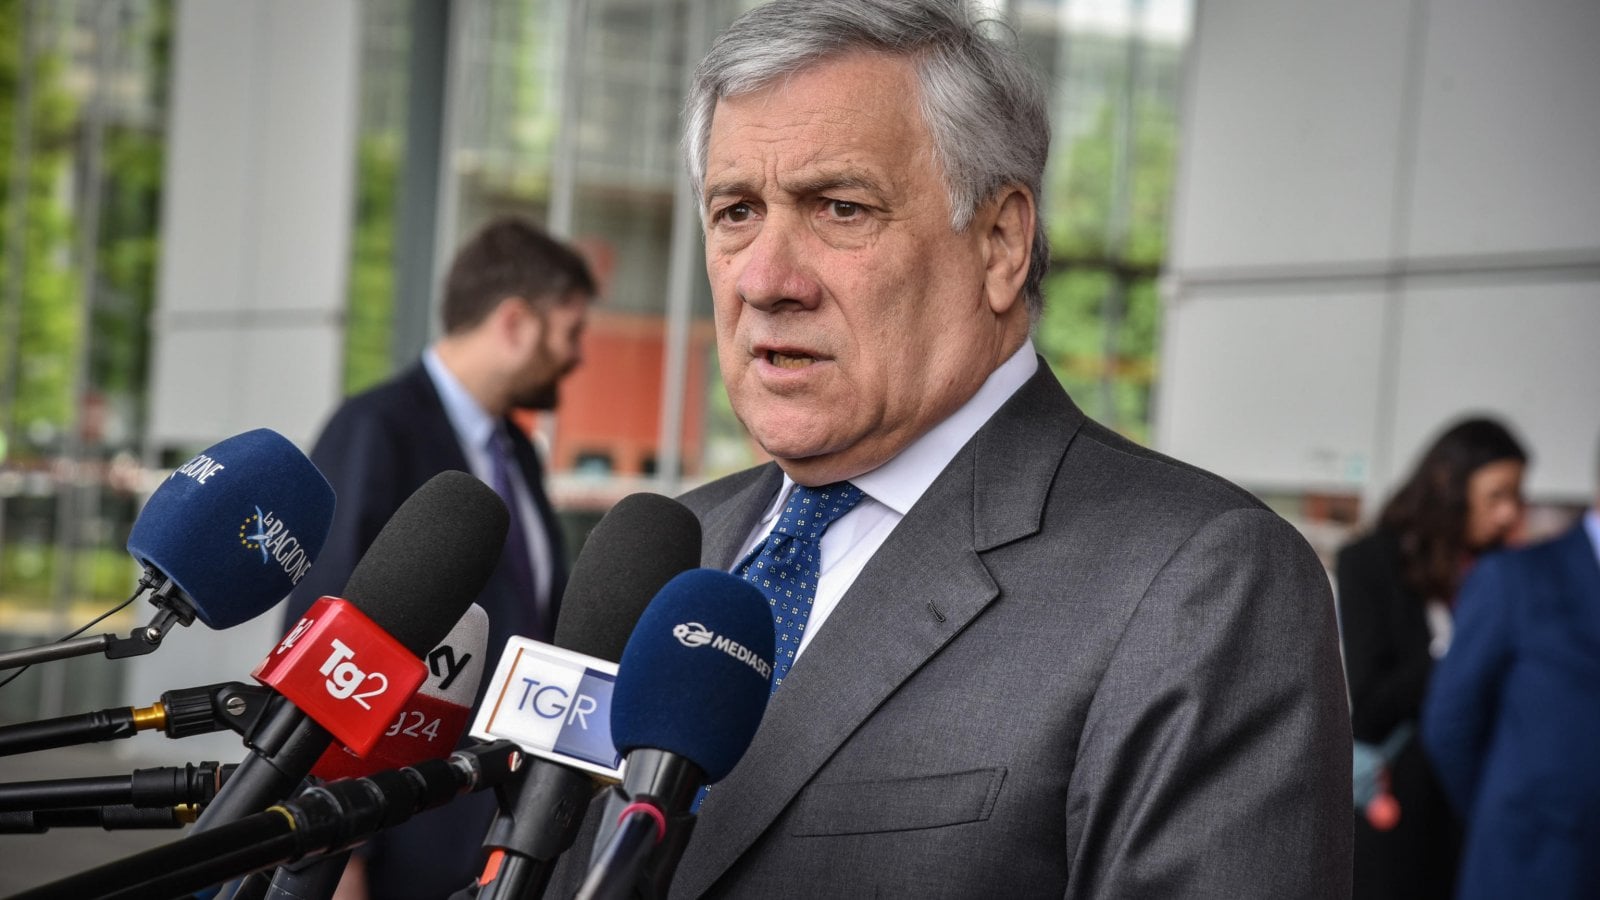 Il governo Meloni strappa con la Francia, Tajani: "Non andrò a Parigi, offese inaccettabili"